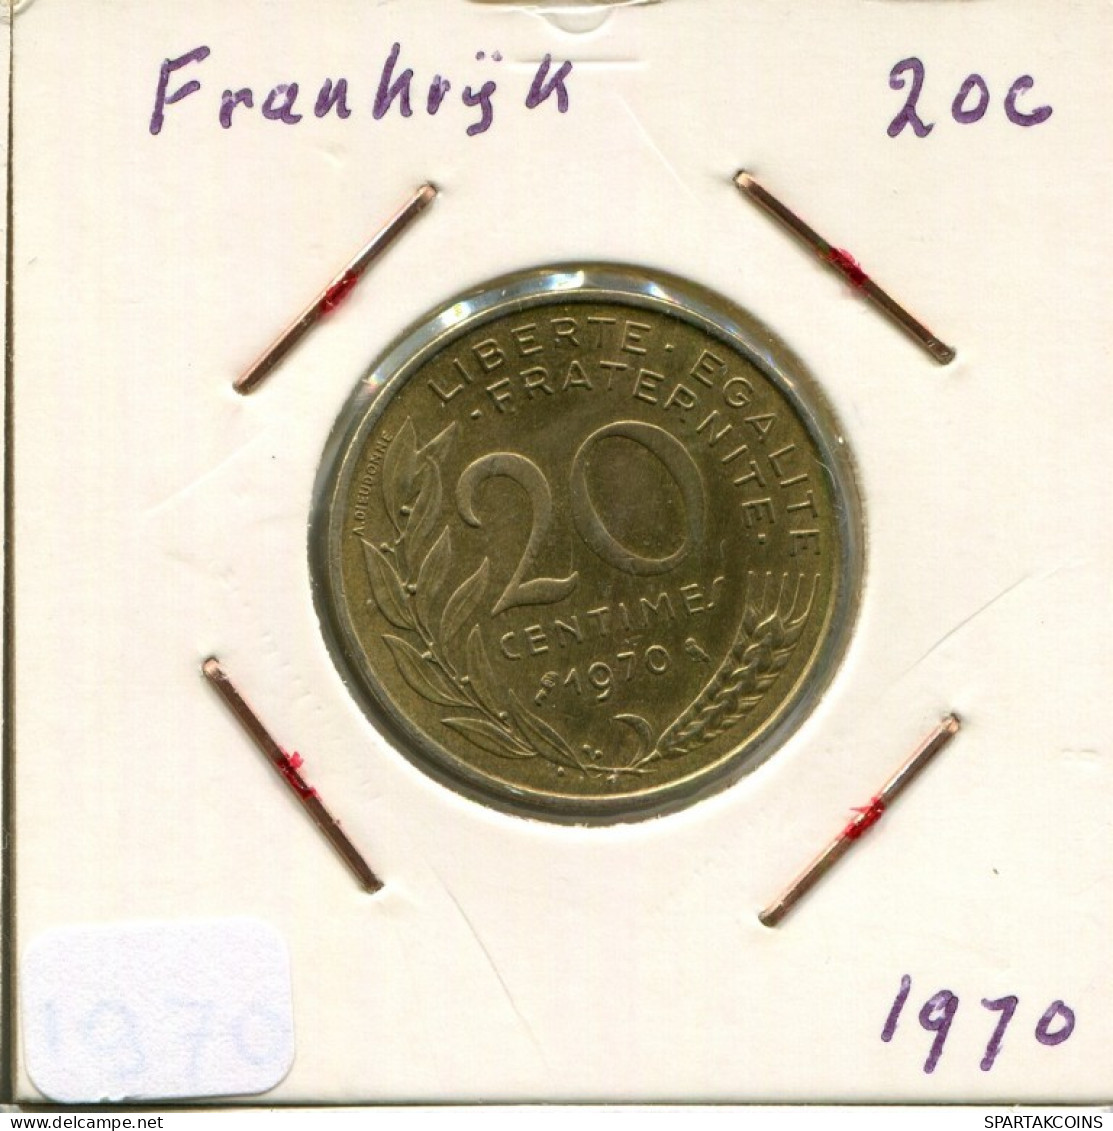 20 CENTIMES 1970 FRANKREICH FRANCE Französisch Münze #AM851.D.A - 20 Centimes